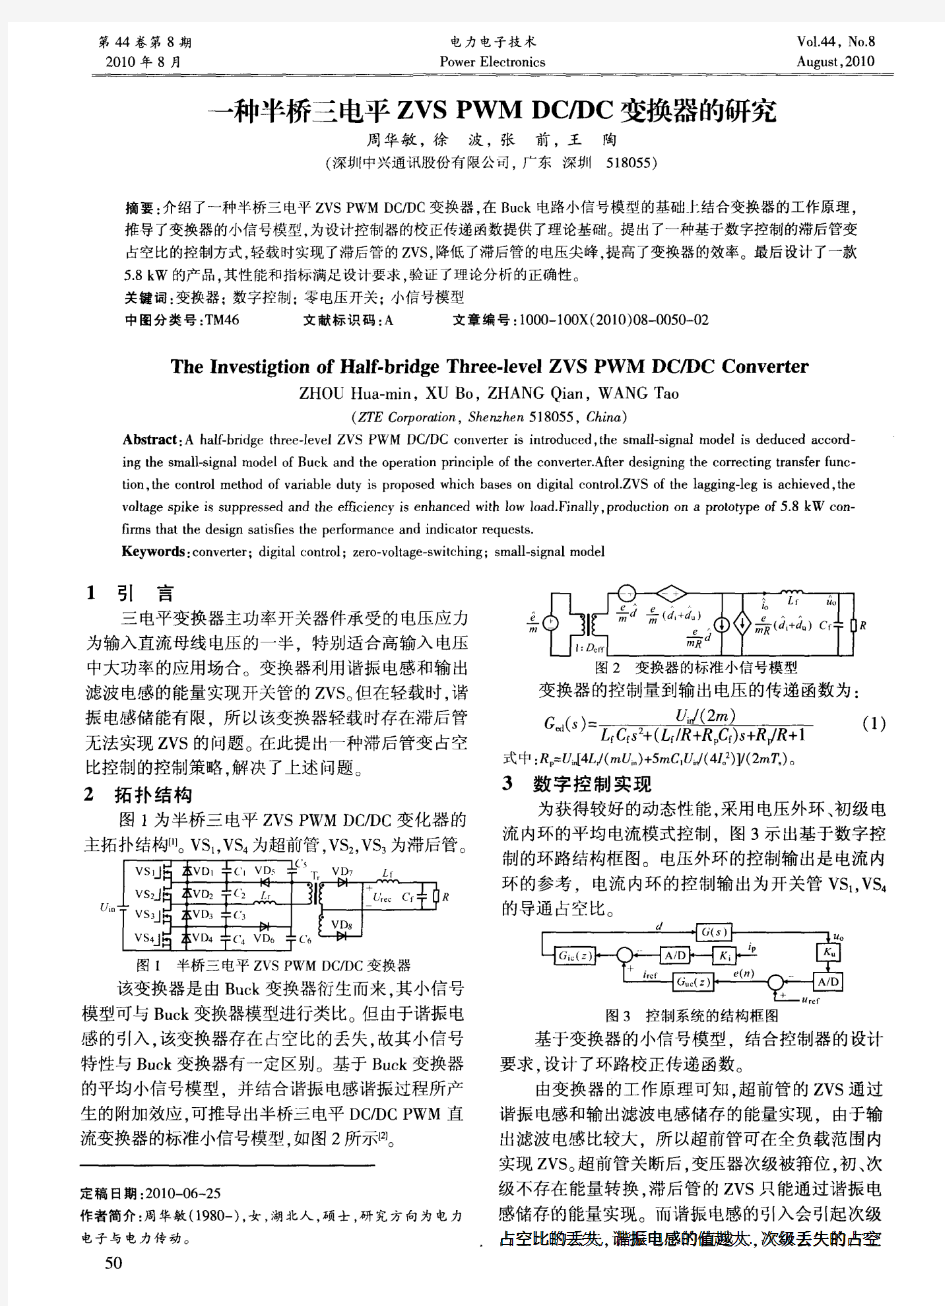 一种半桥三电平ZVS PWMDC_DC变换器的研究